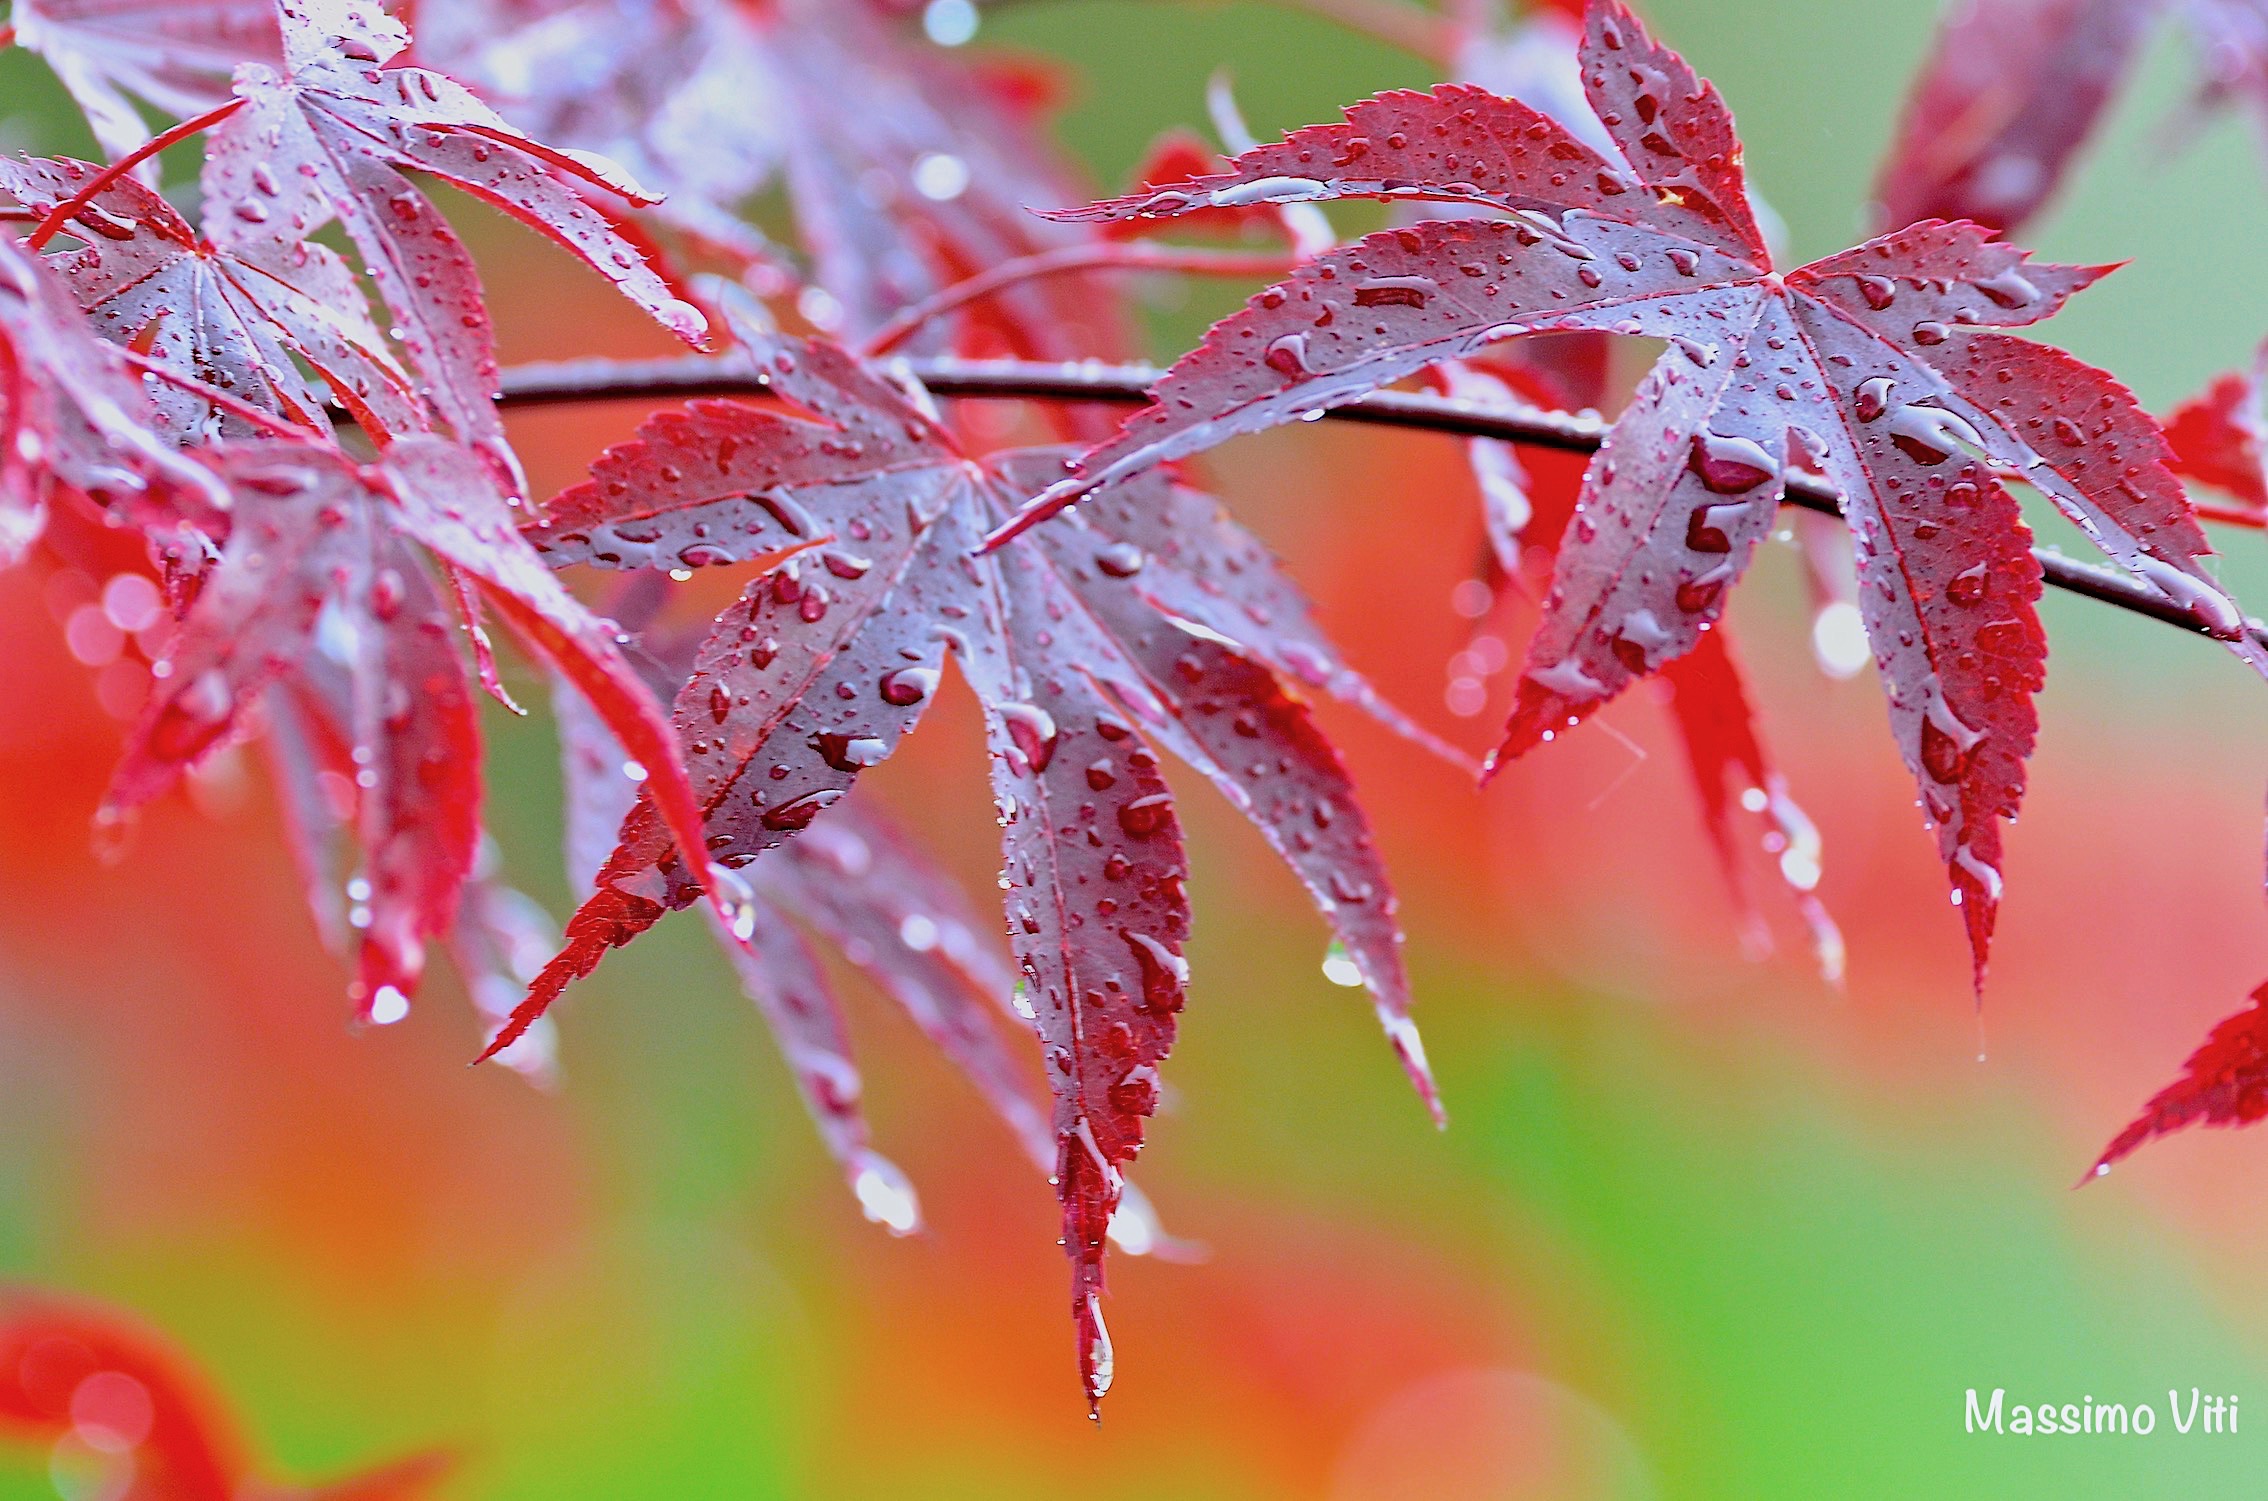 Pioggia su foglie d'Acero...